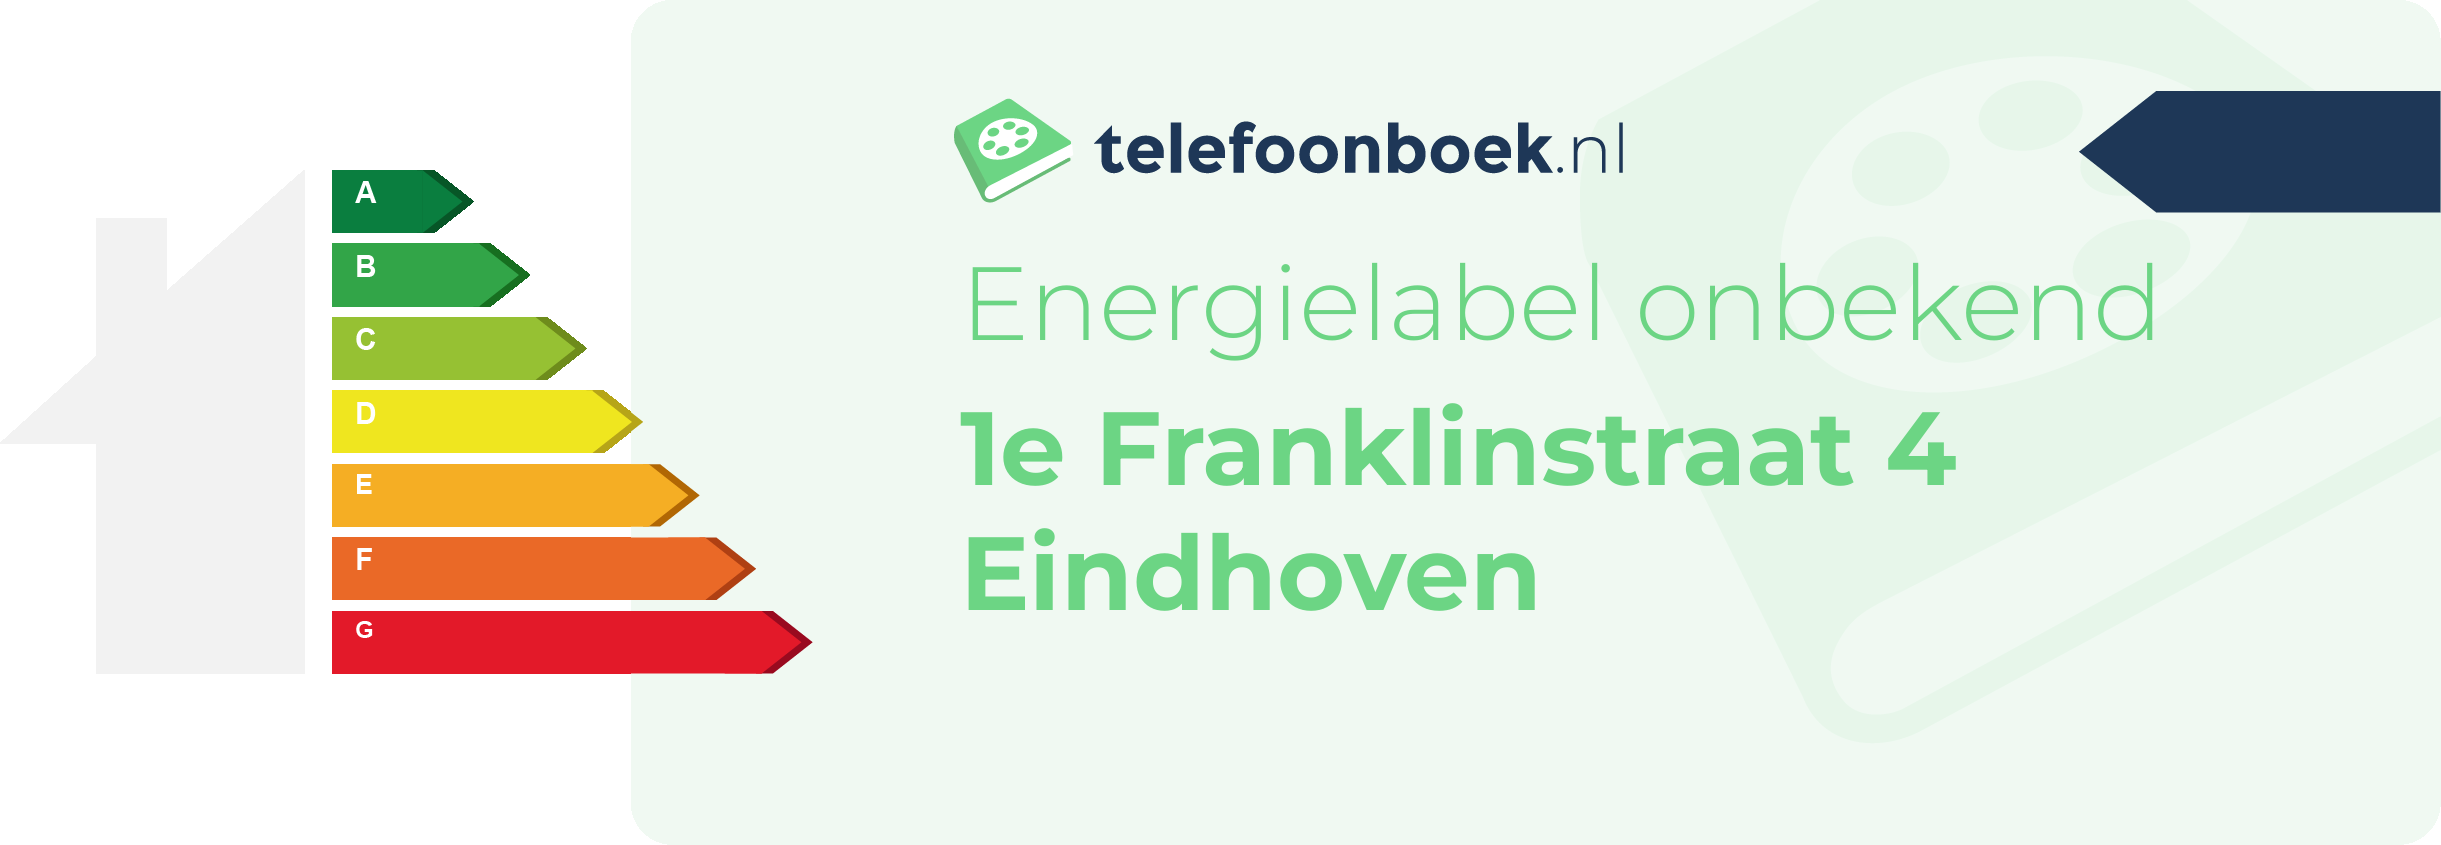 Energielabel 1e Franklinstraat 4 Eindhoven